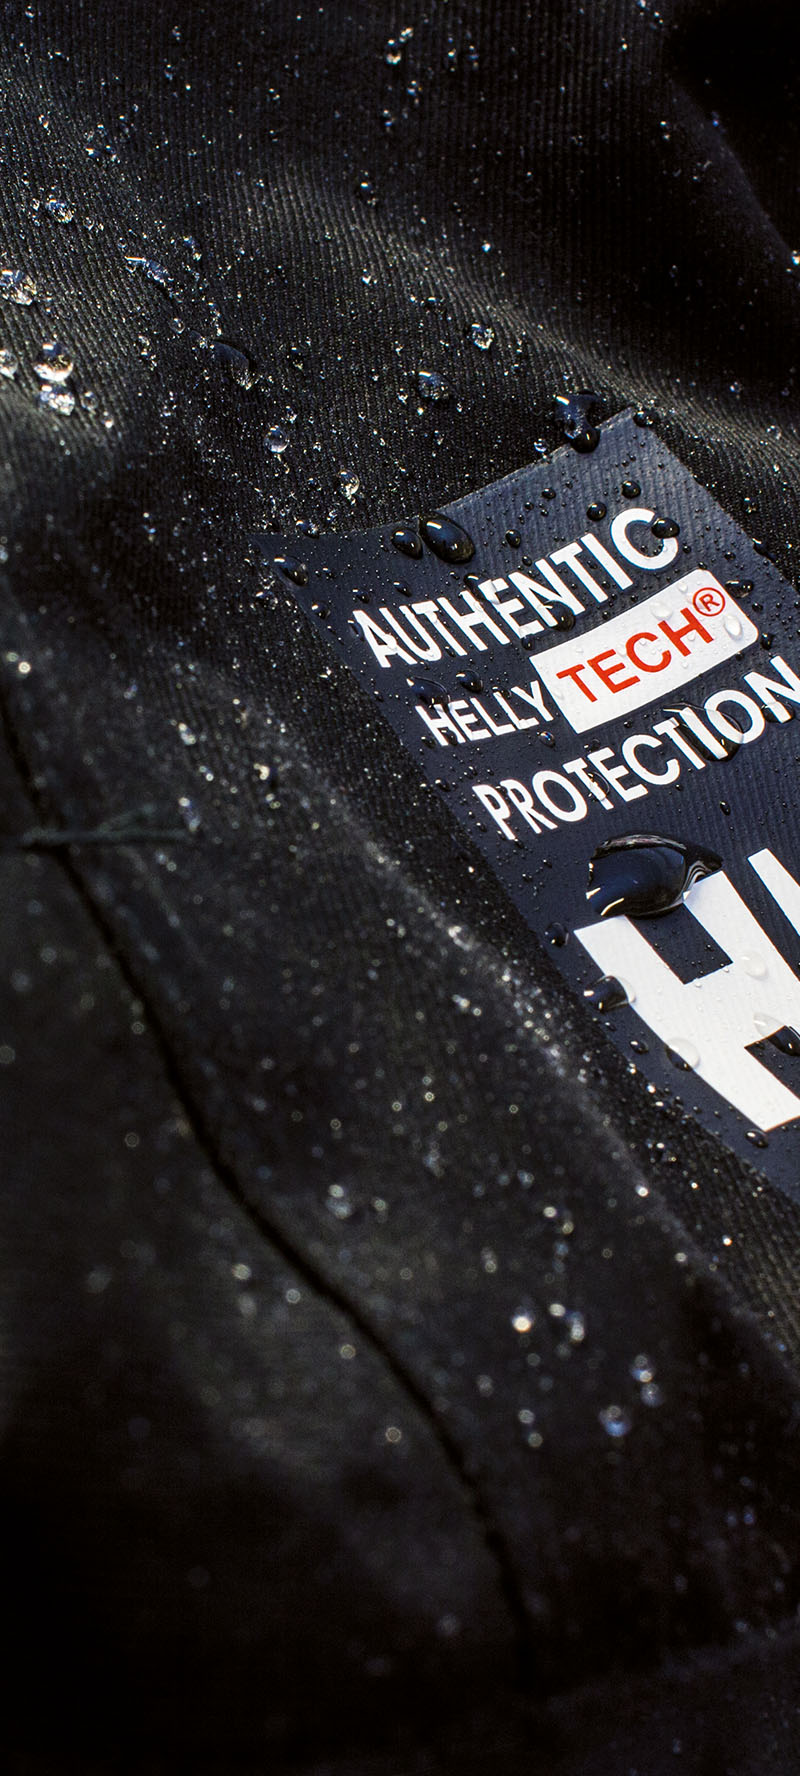 Ausschnitt eines schwarzen Jackenärmels mit abperllenden Regentropfen der Marke Helly Hansen mit der Aufschrift "Authentic Helly Tech Protection"